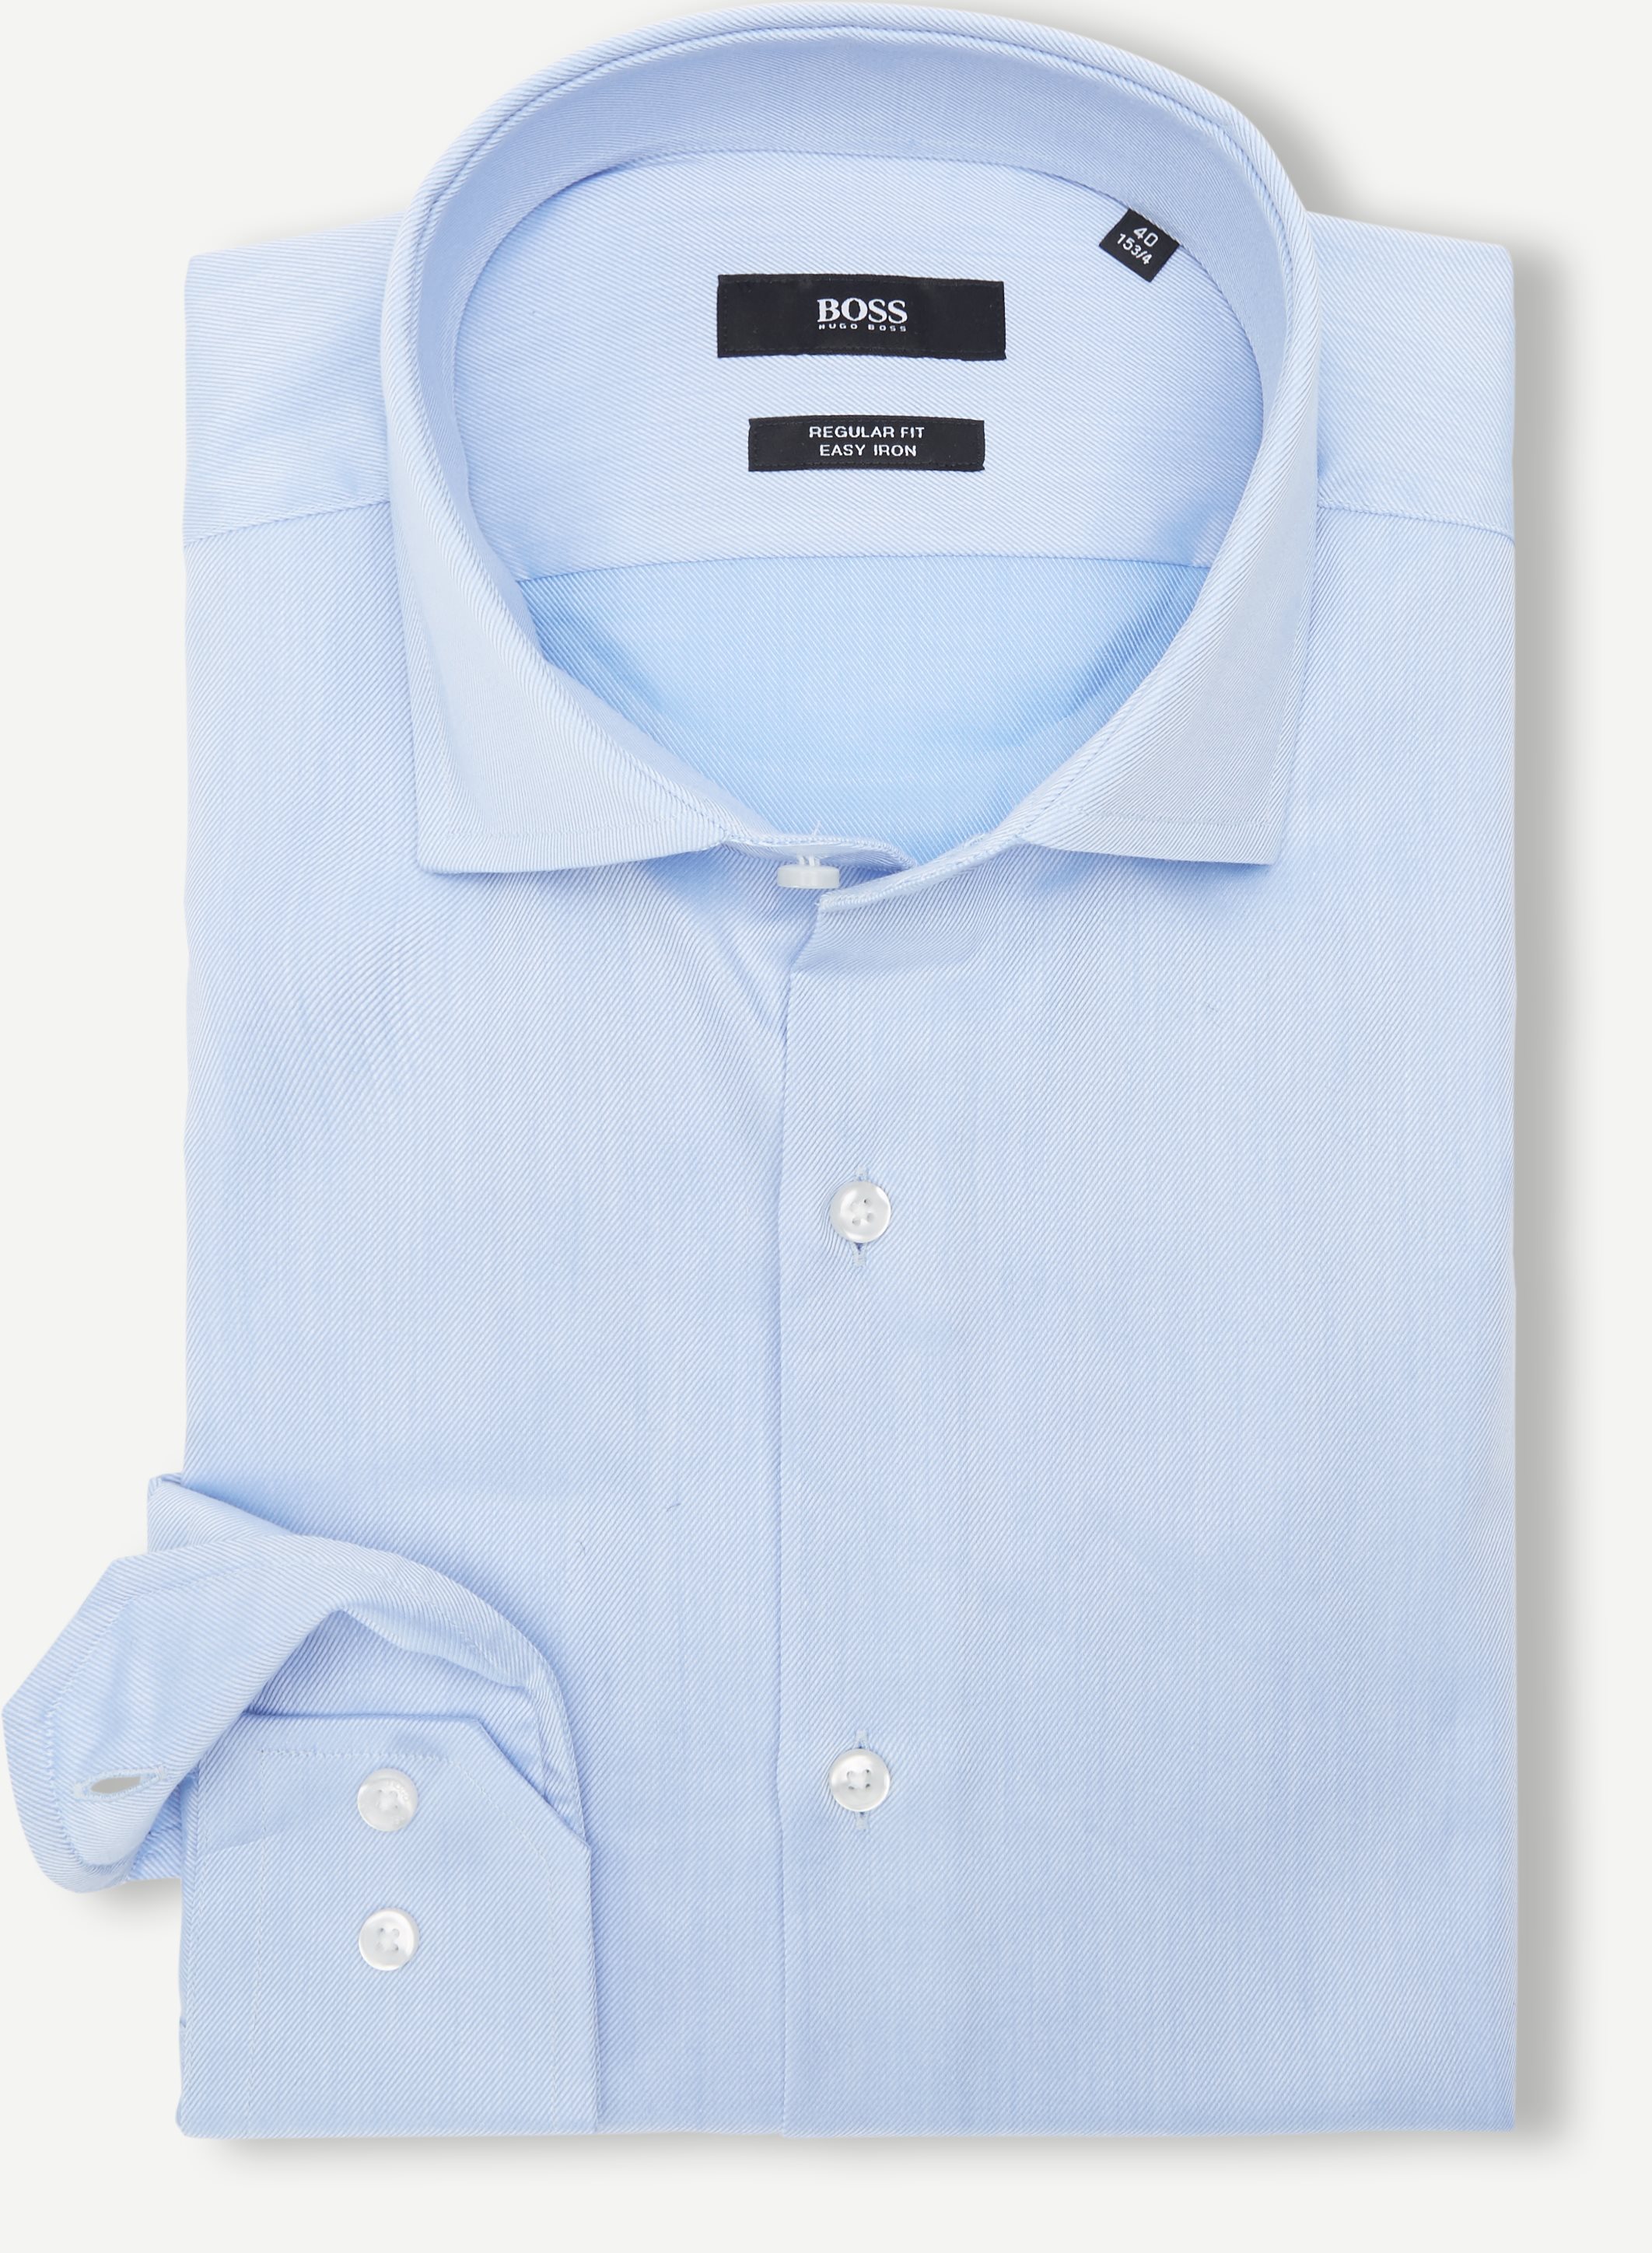 Gordon skjorta - Skjortor - Regular fit - Blå